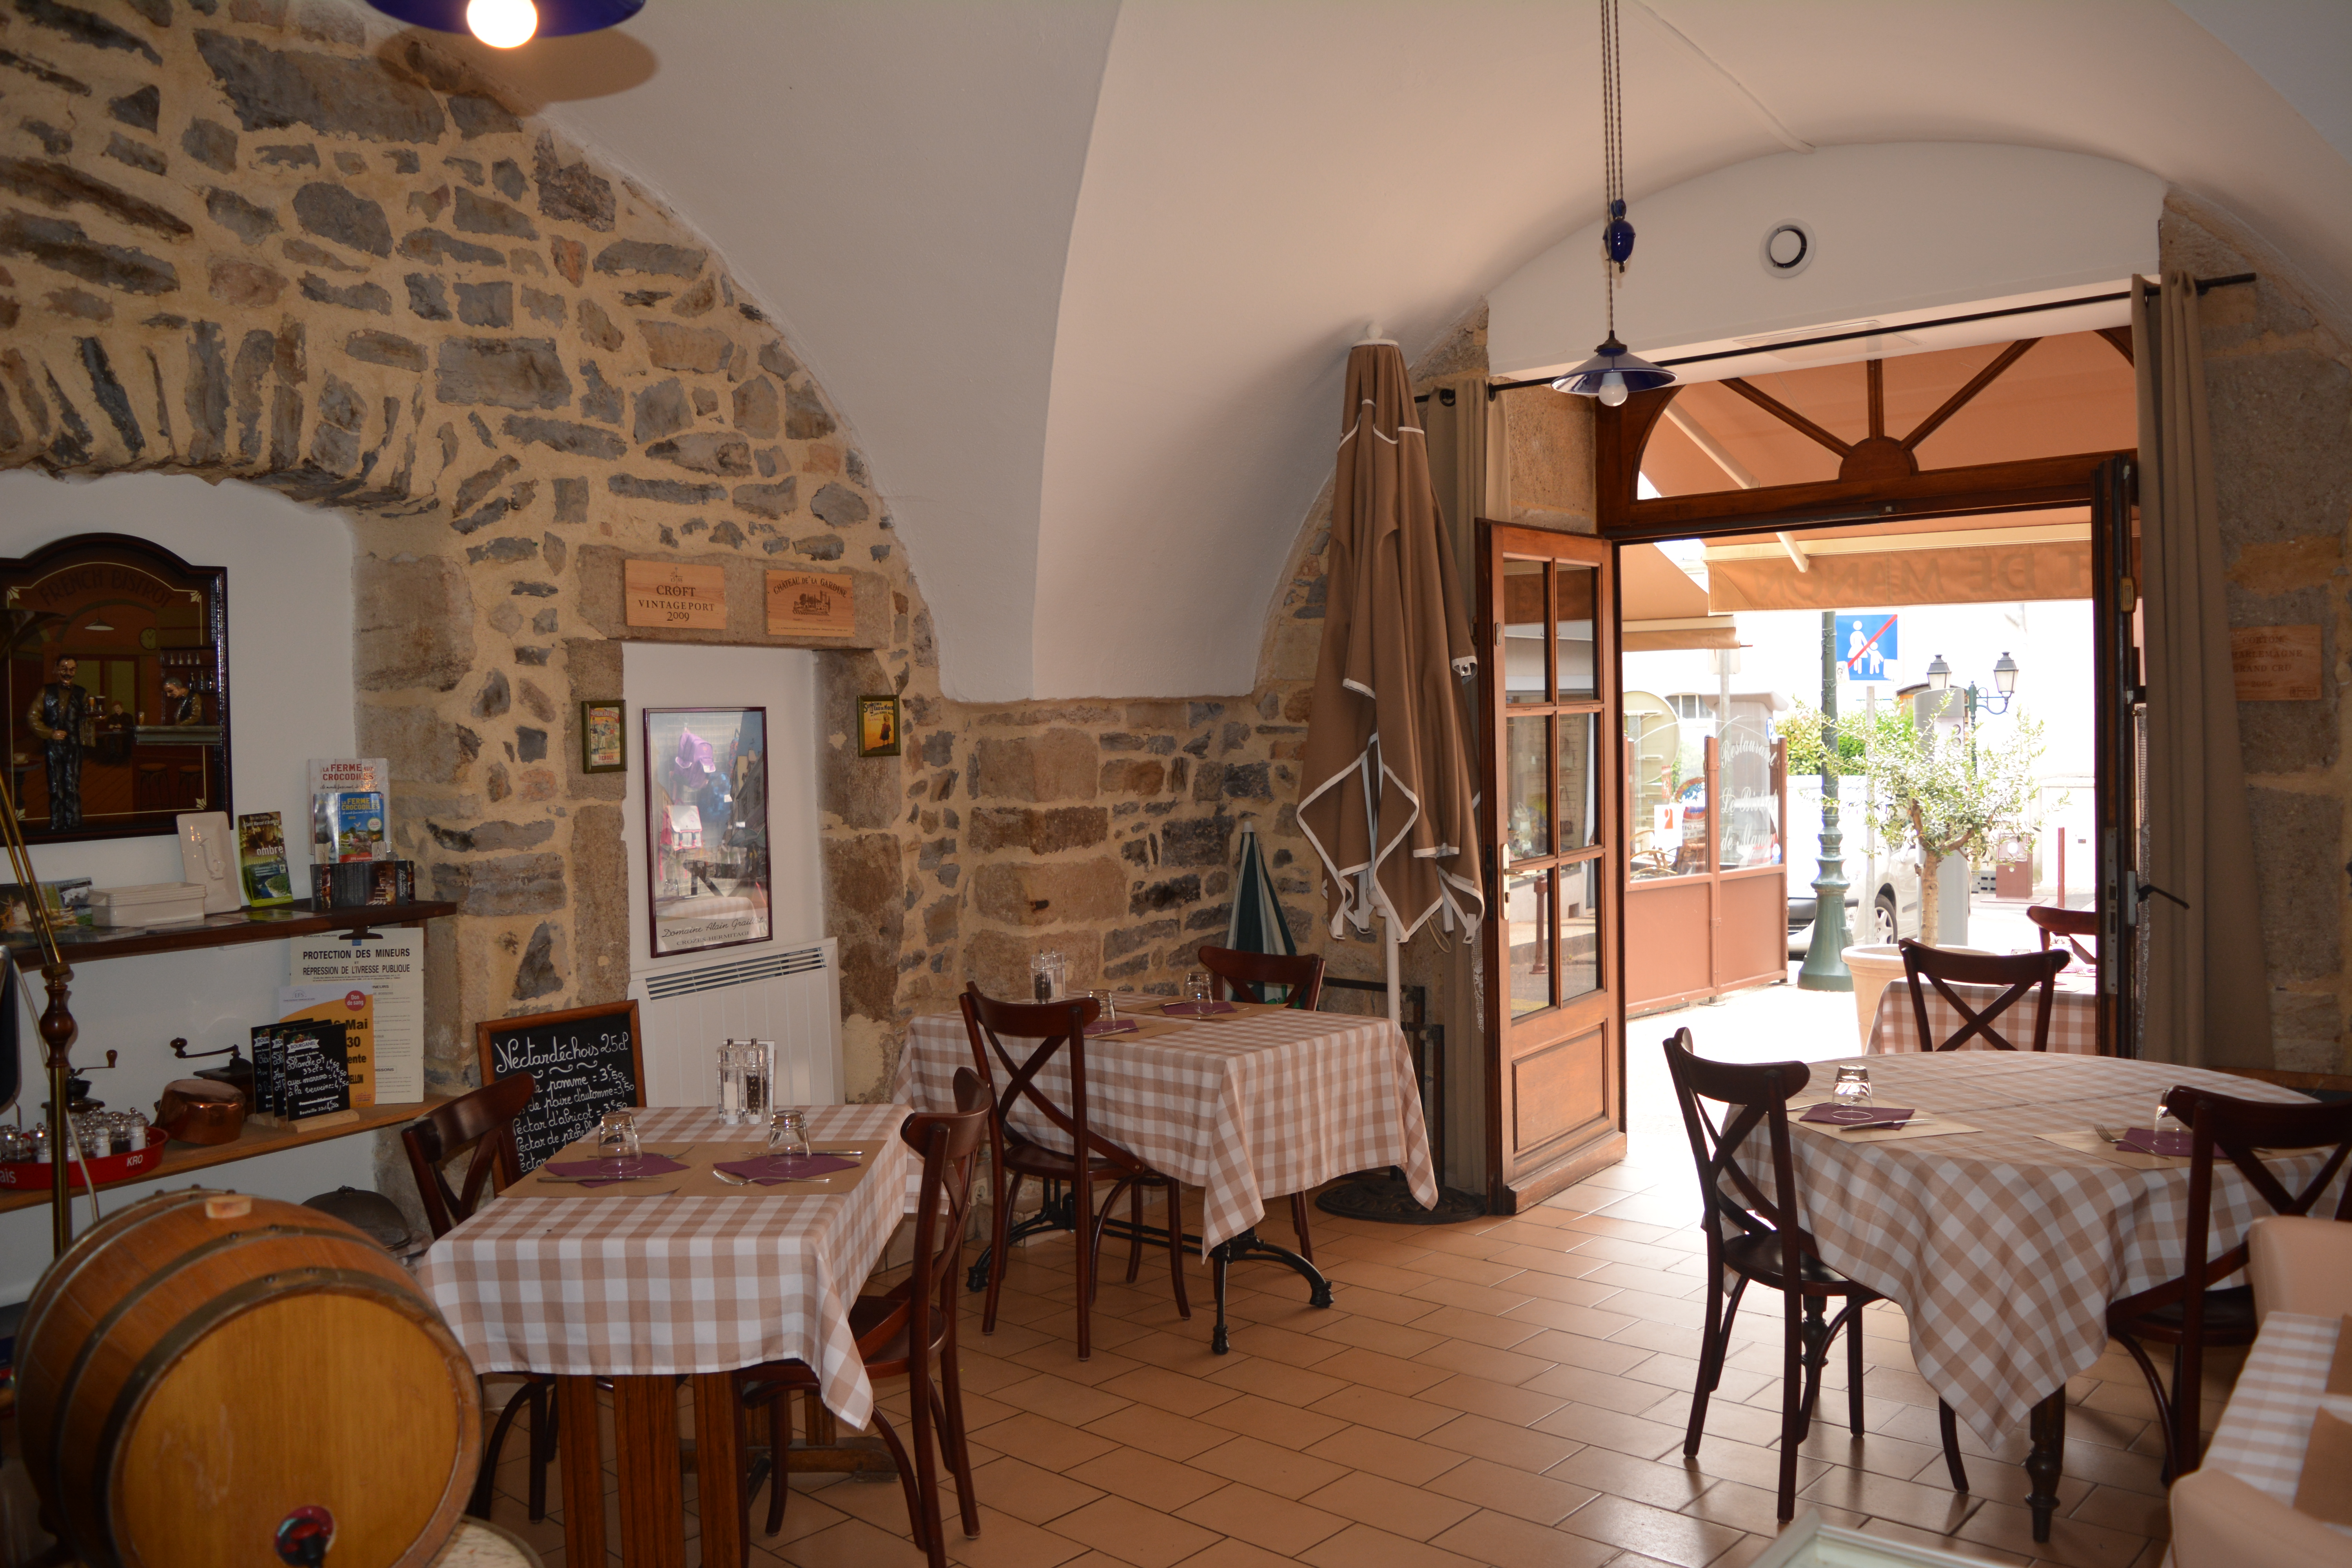 centre ville d'Aubenas Ardèche à 50 mètres de la place du château , rue commerçante, vend fond de commerce d'un restaurant cause retraite .
Restaurant avec 2 salles  plus terrasse tout équipé façade refaite.